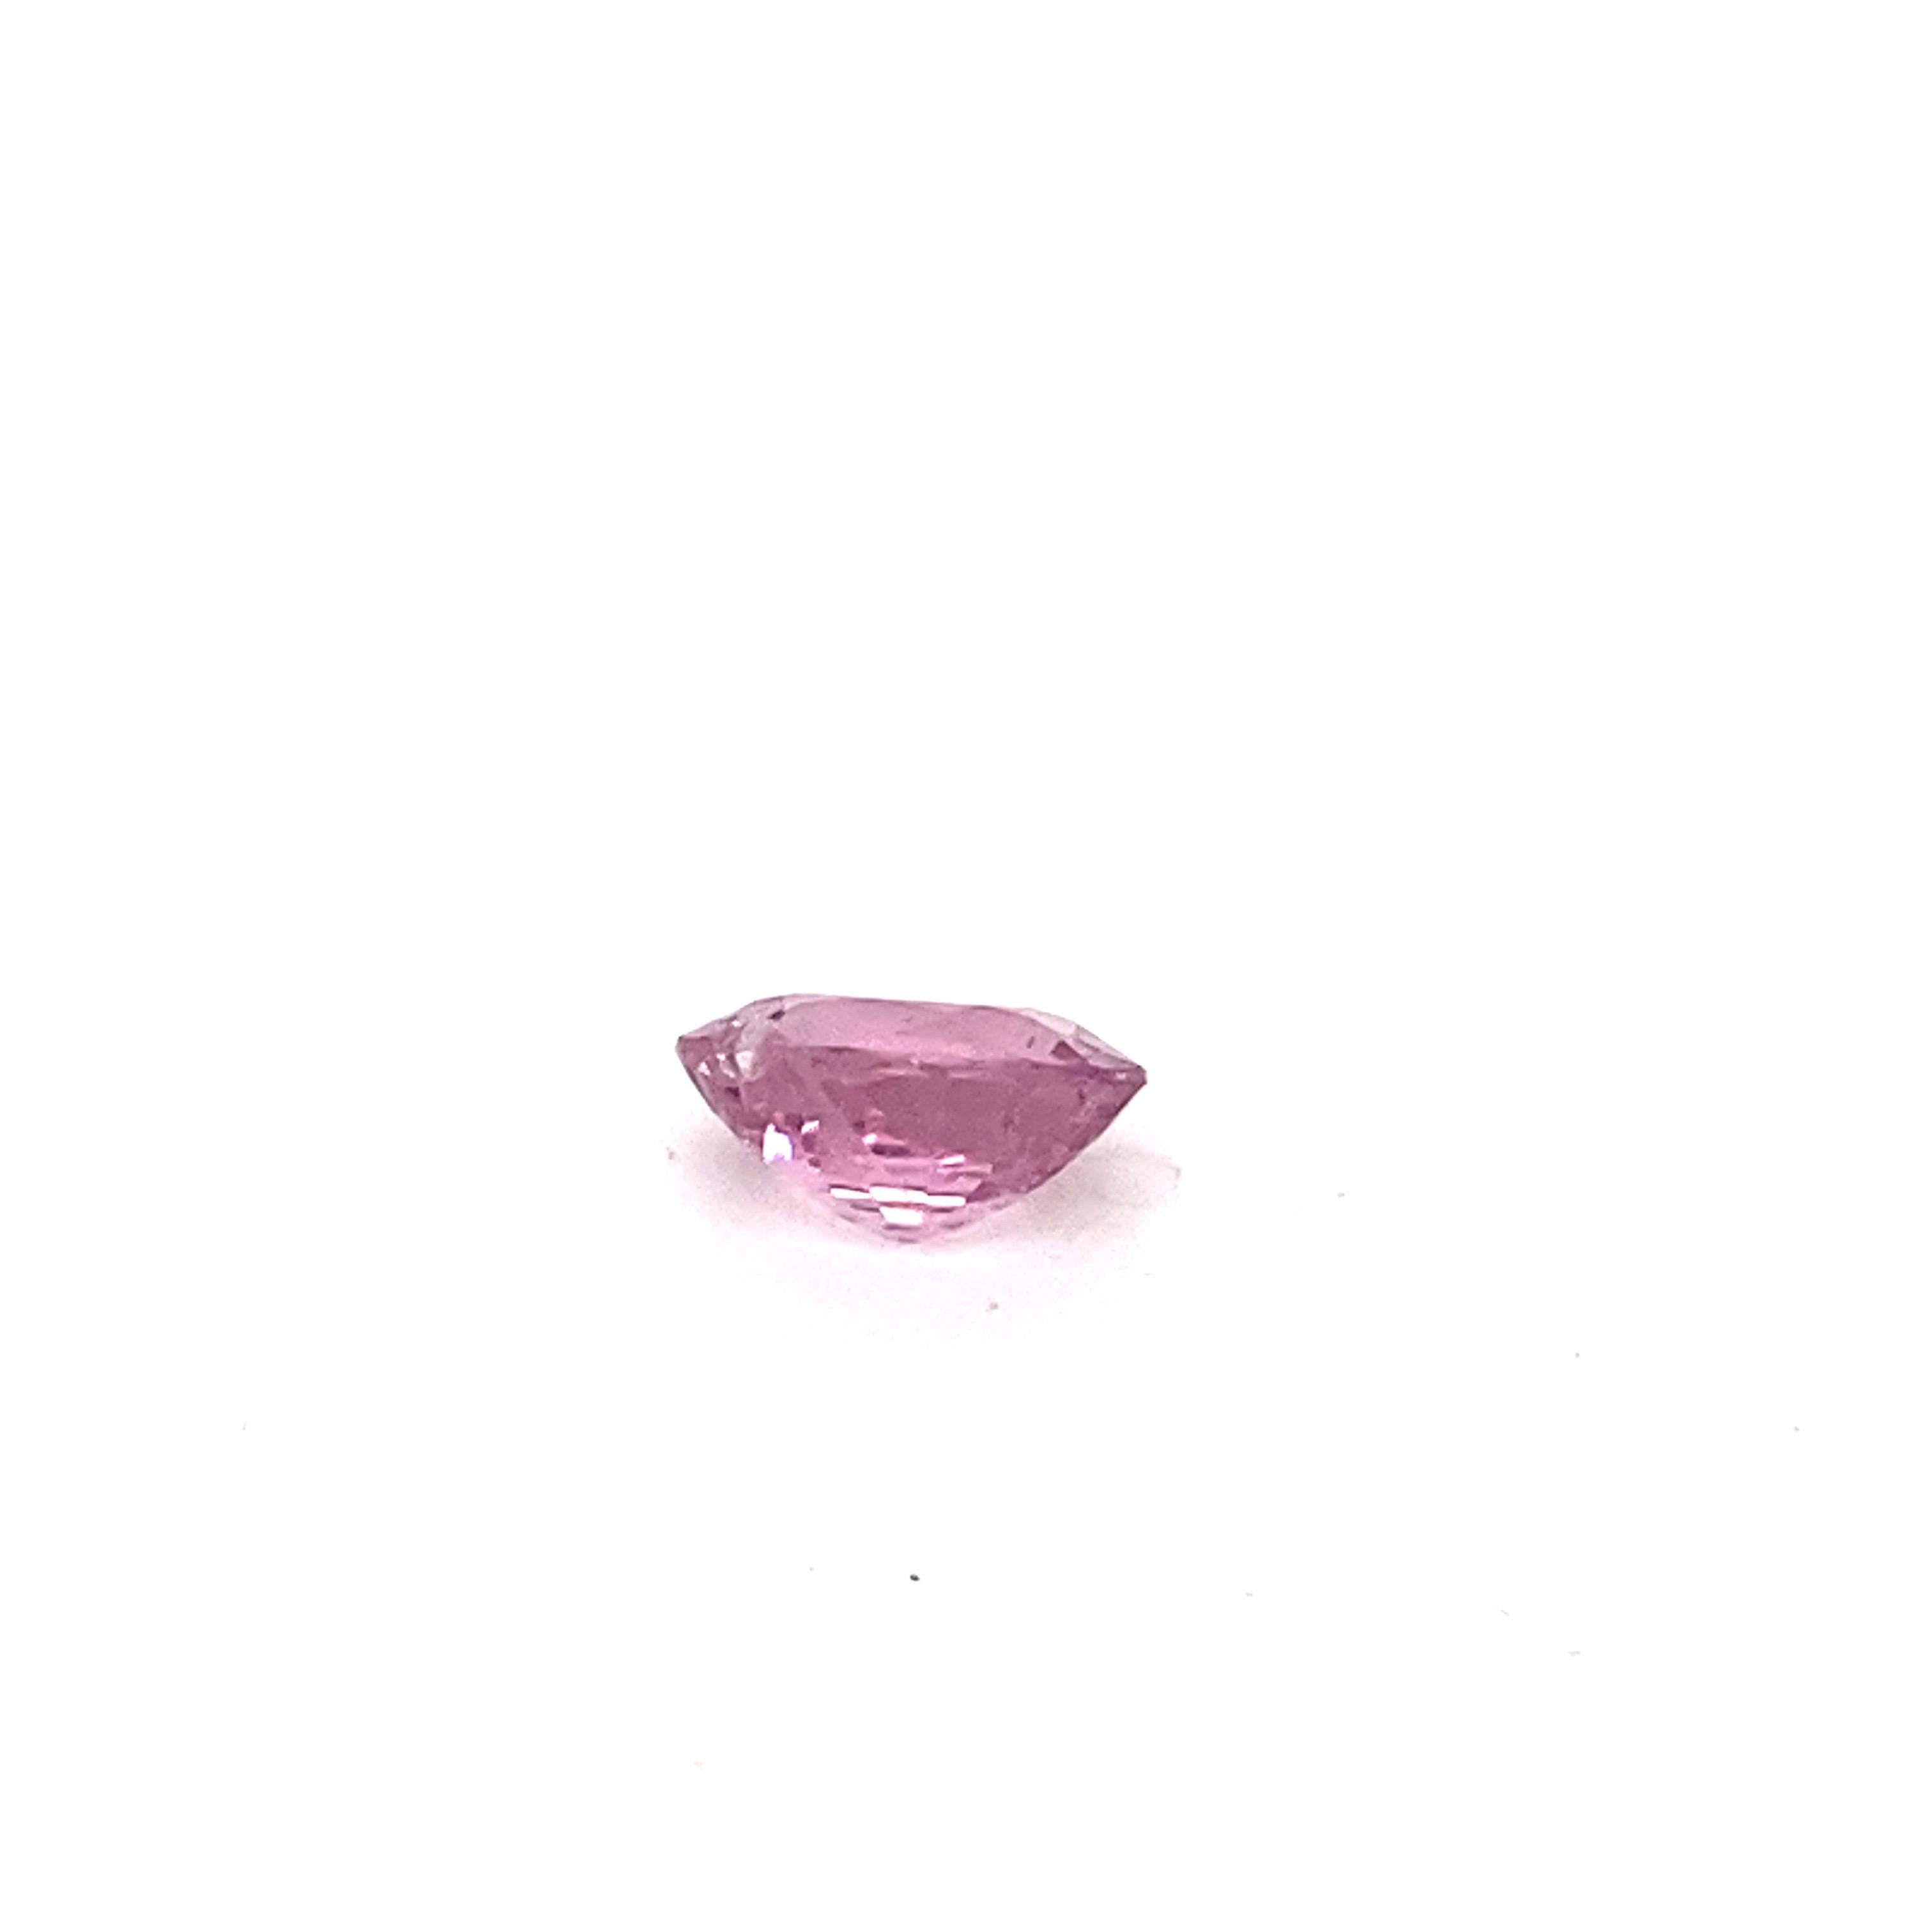 2.0 Carat Oval Shape Natural Pink Spinel Loose Gemstone For Sale 8